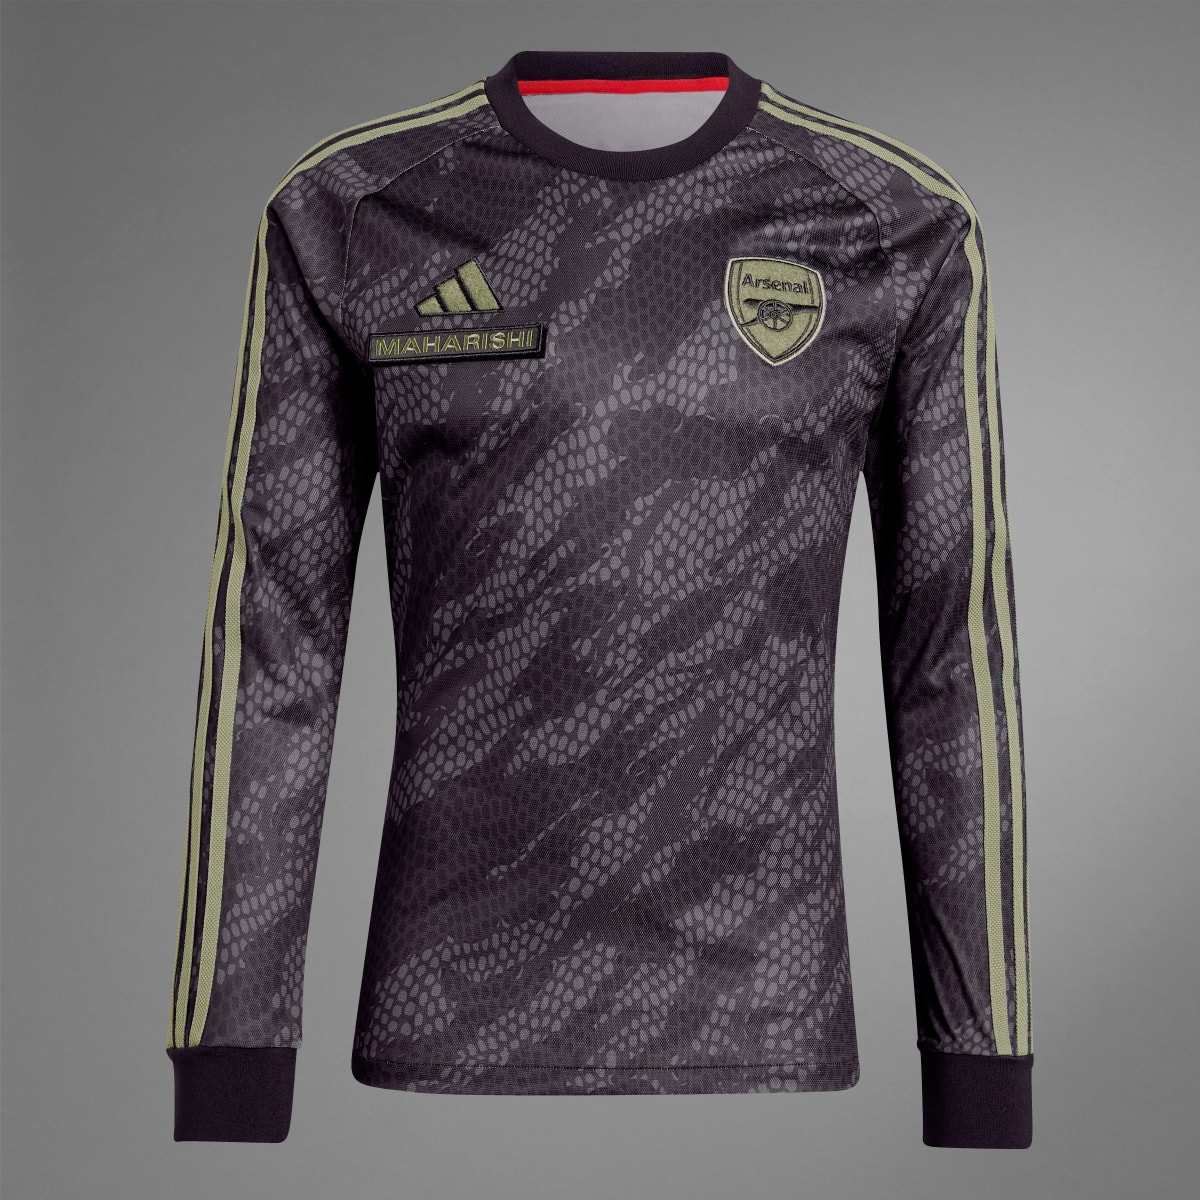 Adidas Camiseta manga larga Arsenal x Maharishi. 10